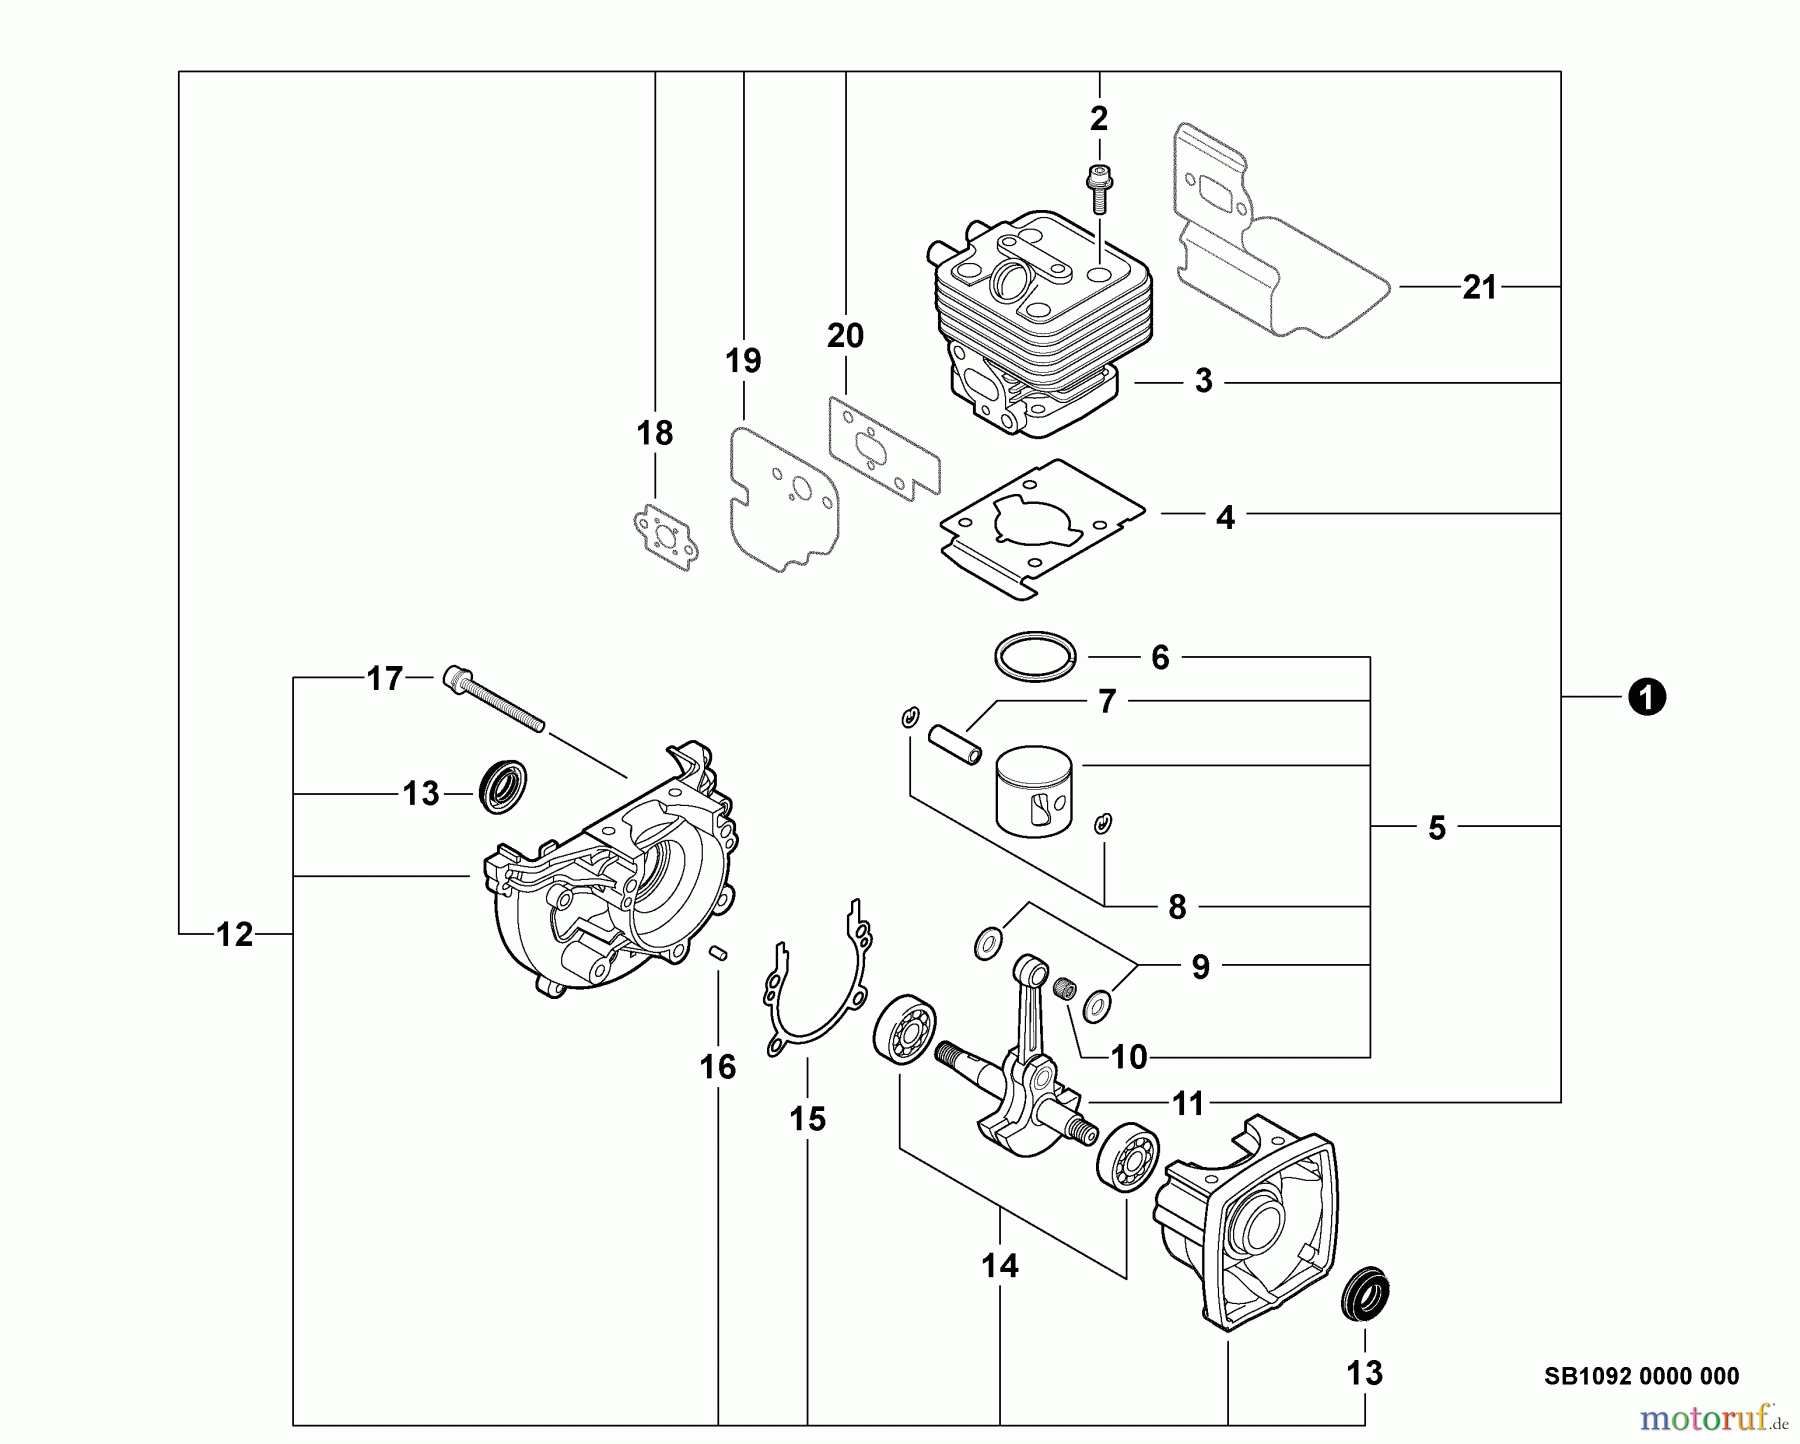  Echo Bläser / Sauger / Häcksler / Mulchgeräte	 PB-265LN - Echo Blower/Vacuums, S/N: P35411001001 - P35411999999 Engine, Short Block -- SB1092